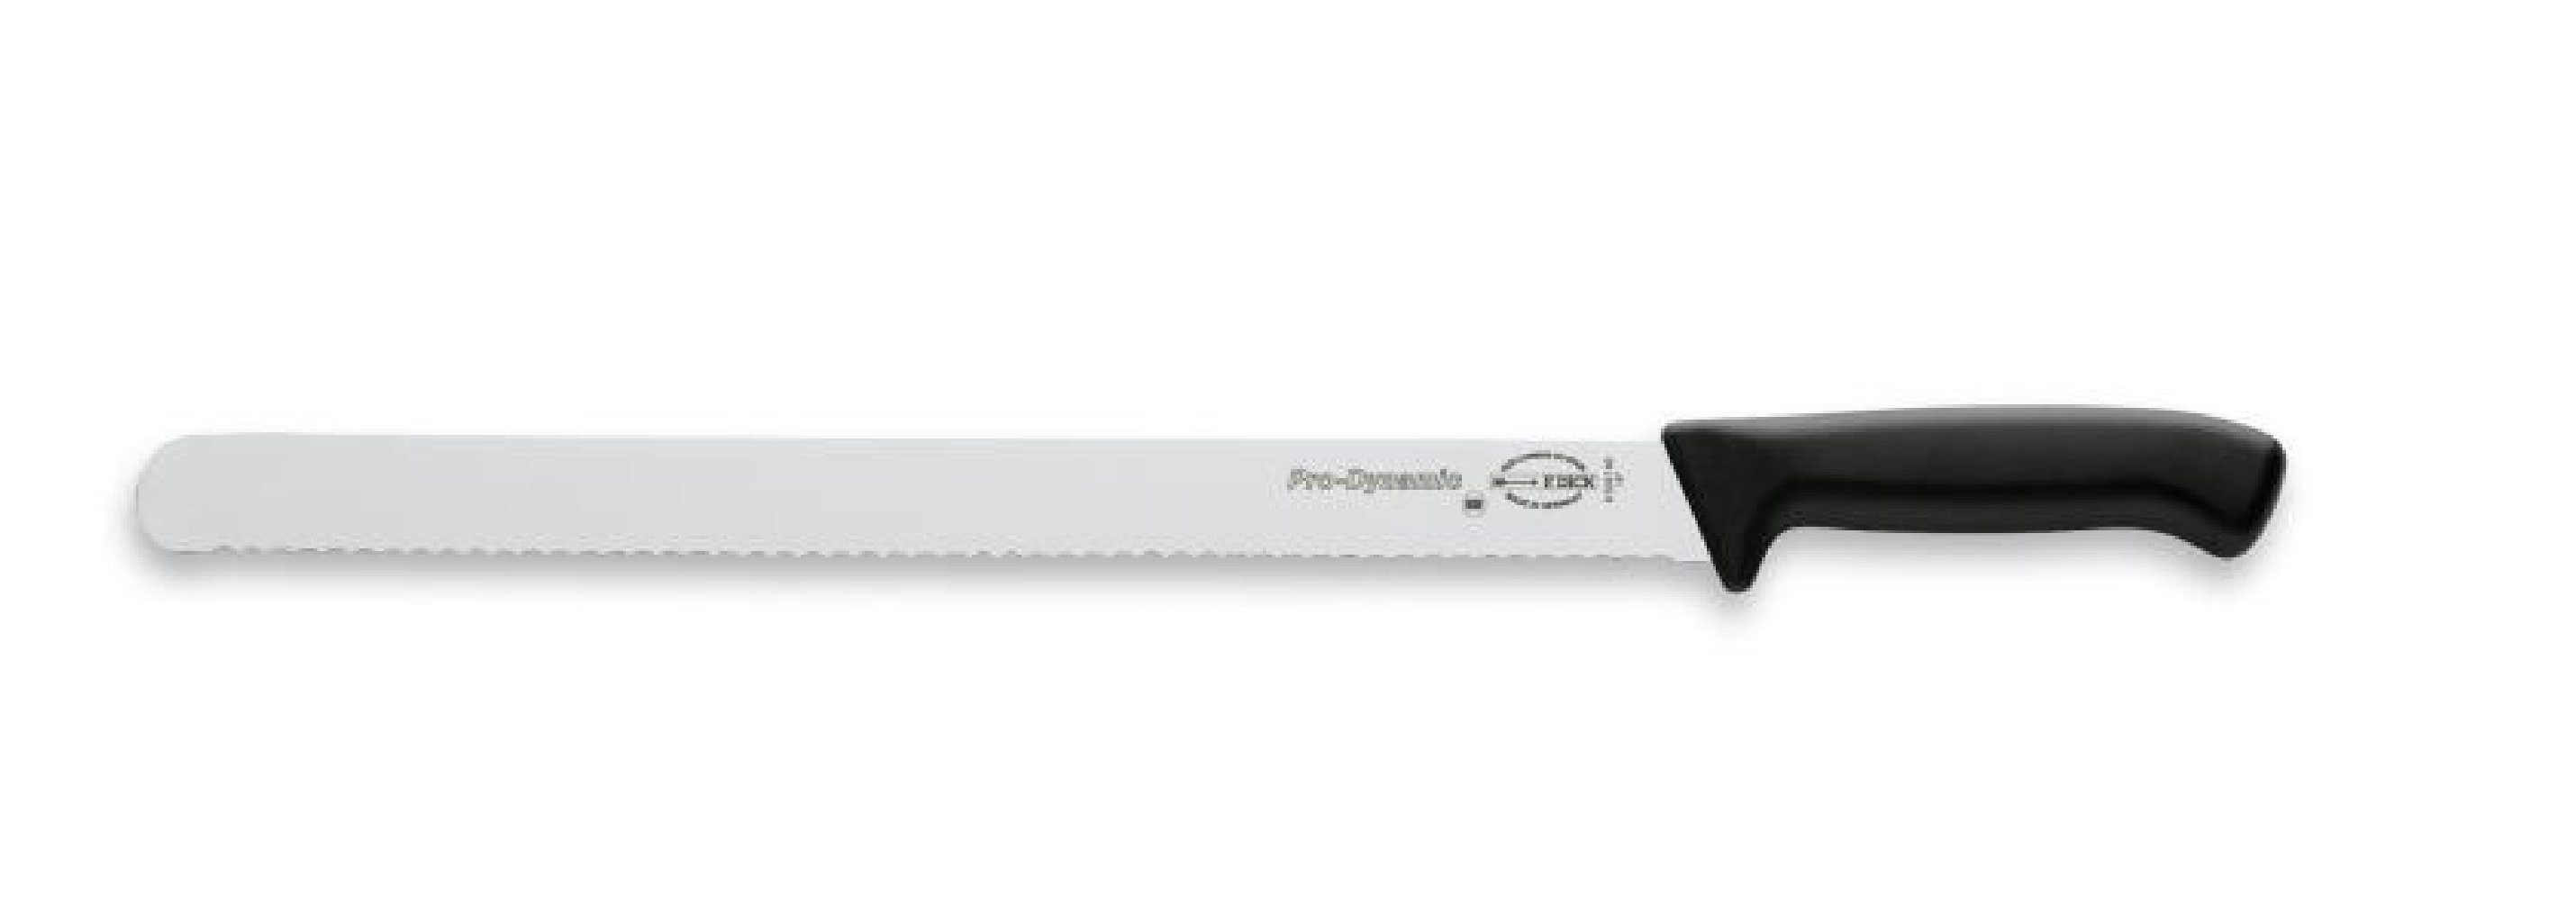 Dick Aufschnittmesser Messer Dick 8503740 cm 40 ProDynamic Kochmesser Wellenschliff